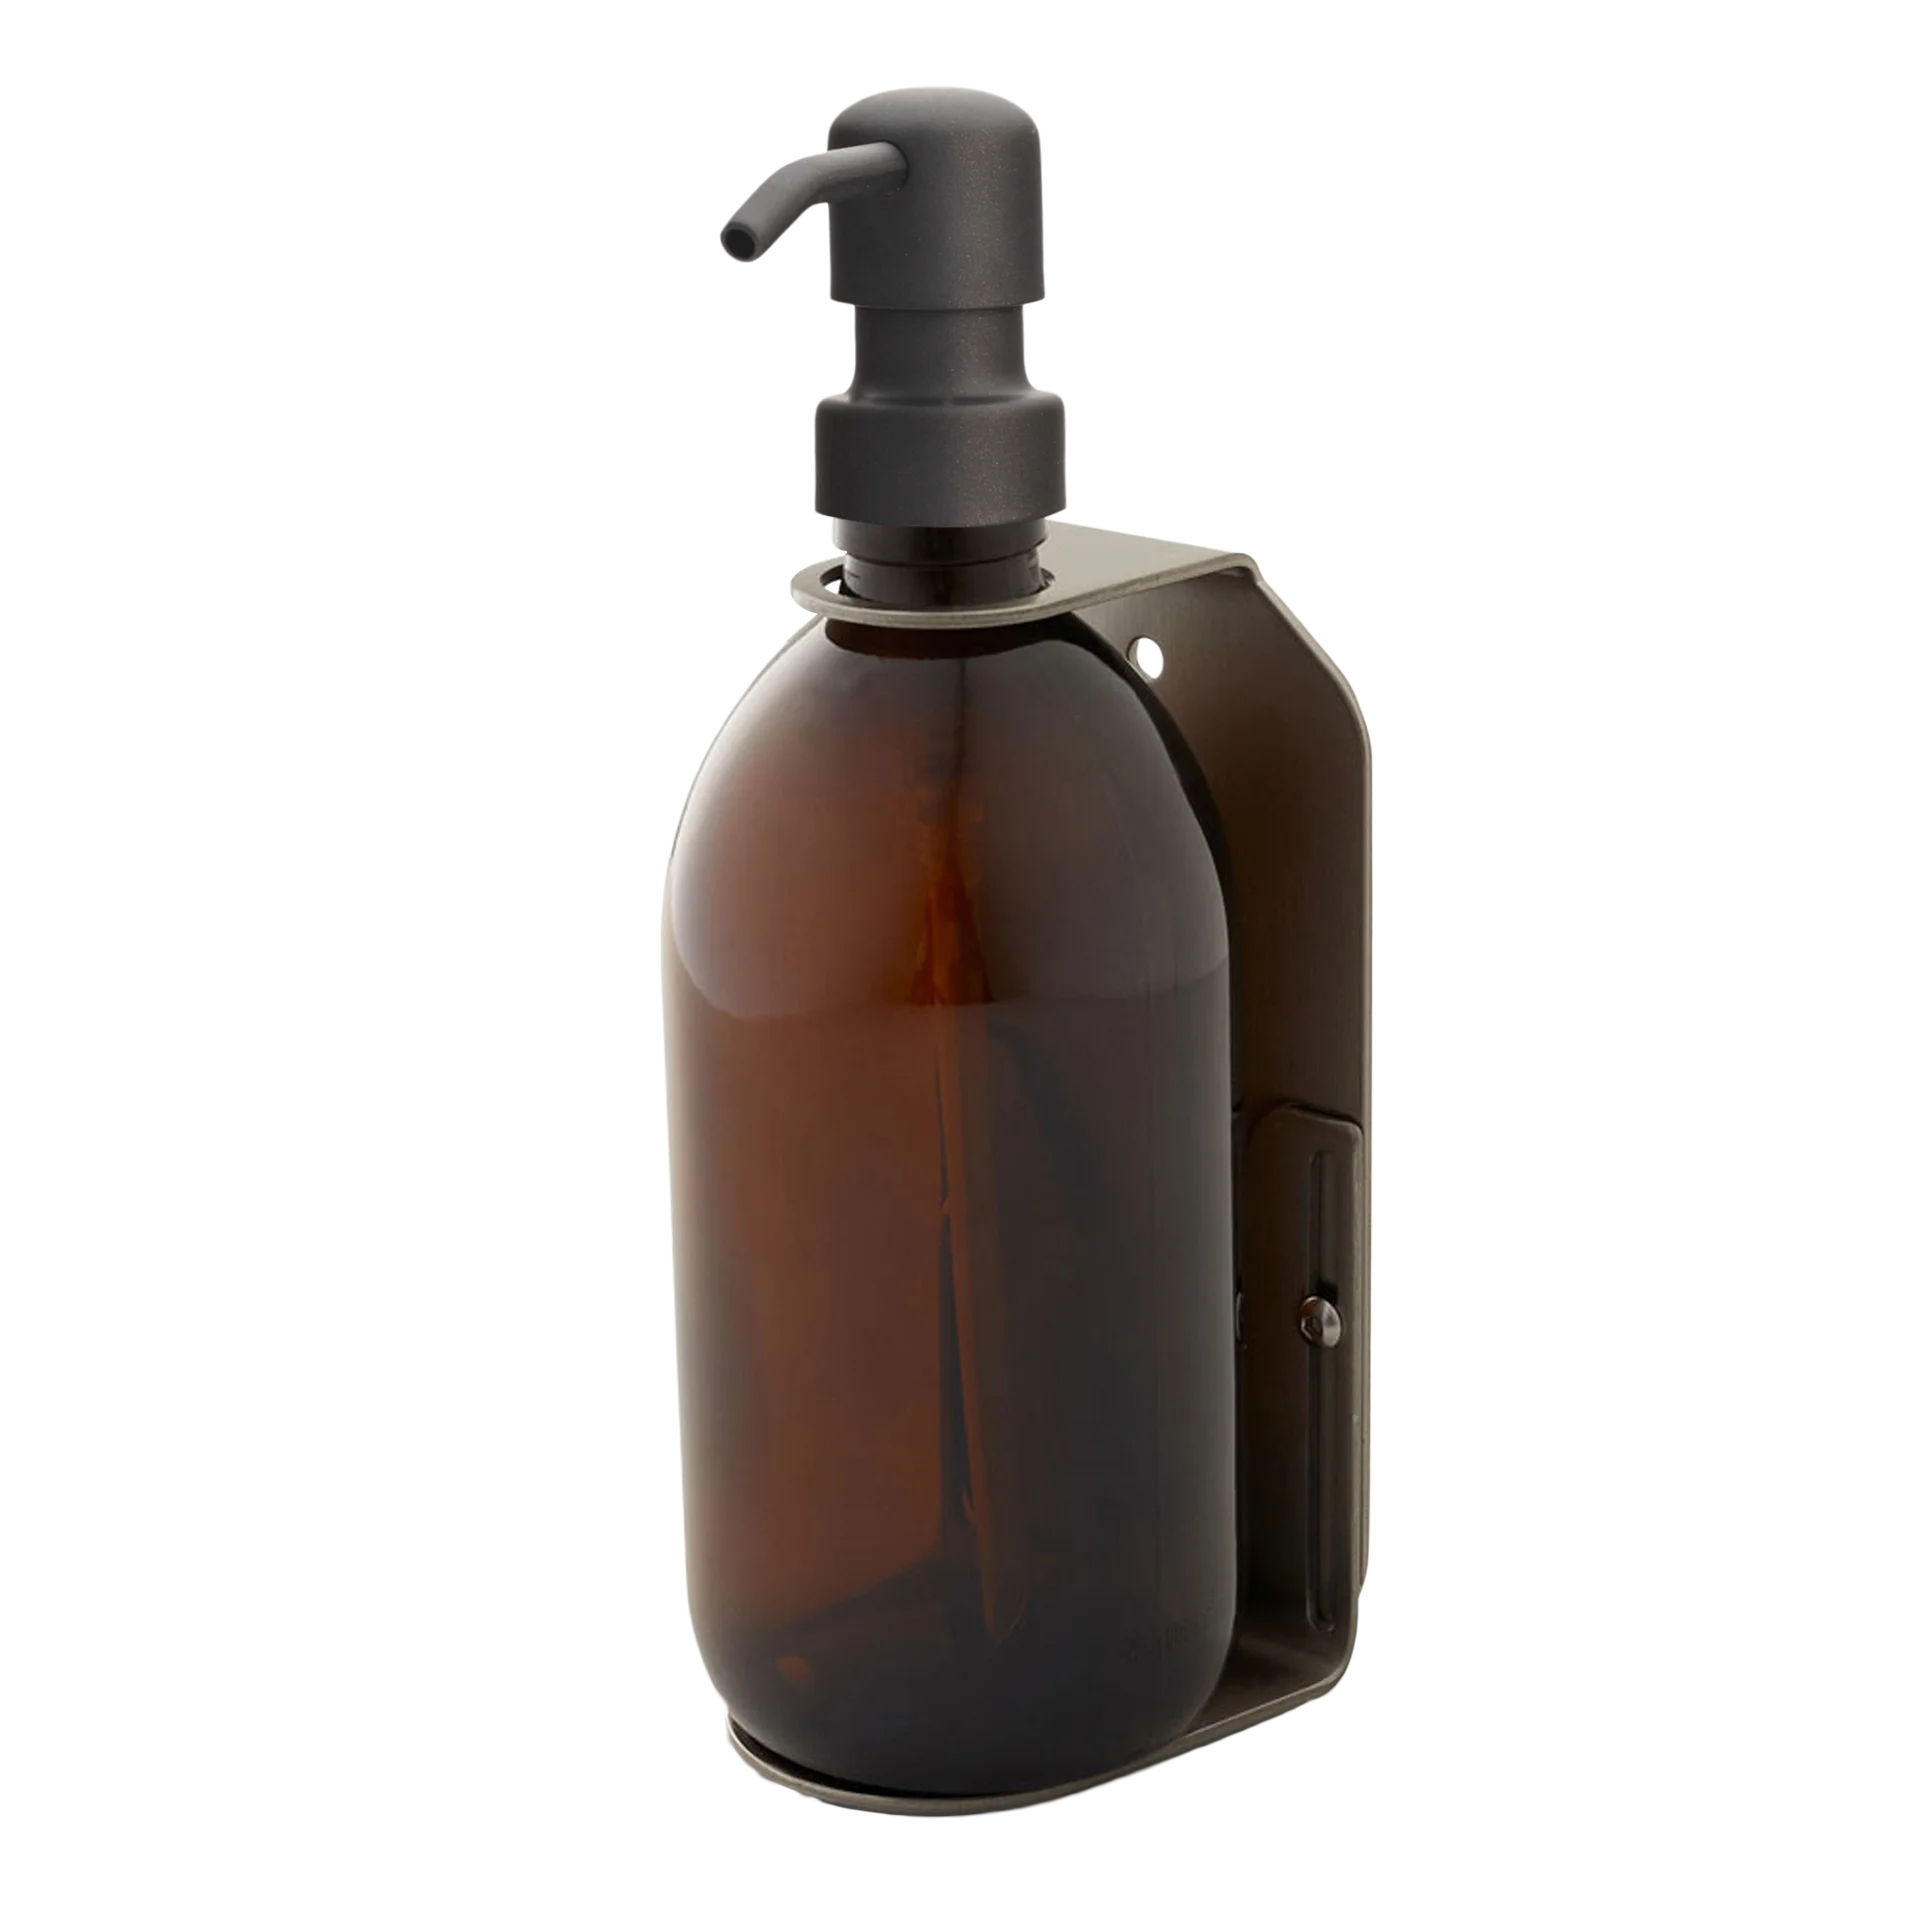 Dispensador de jabón de pared simple plateado satinado ámbar de 500 ml con bomba dispensadora negra a juego